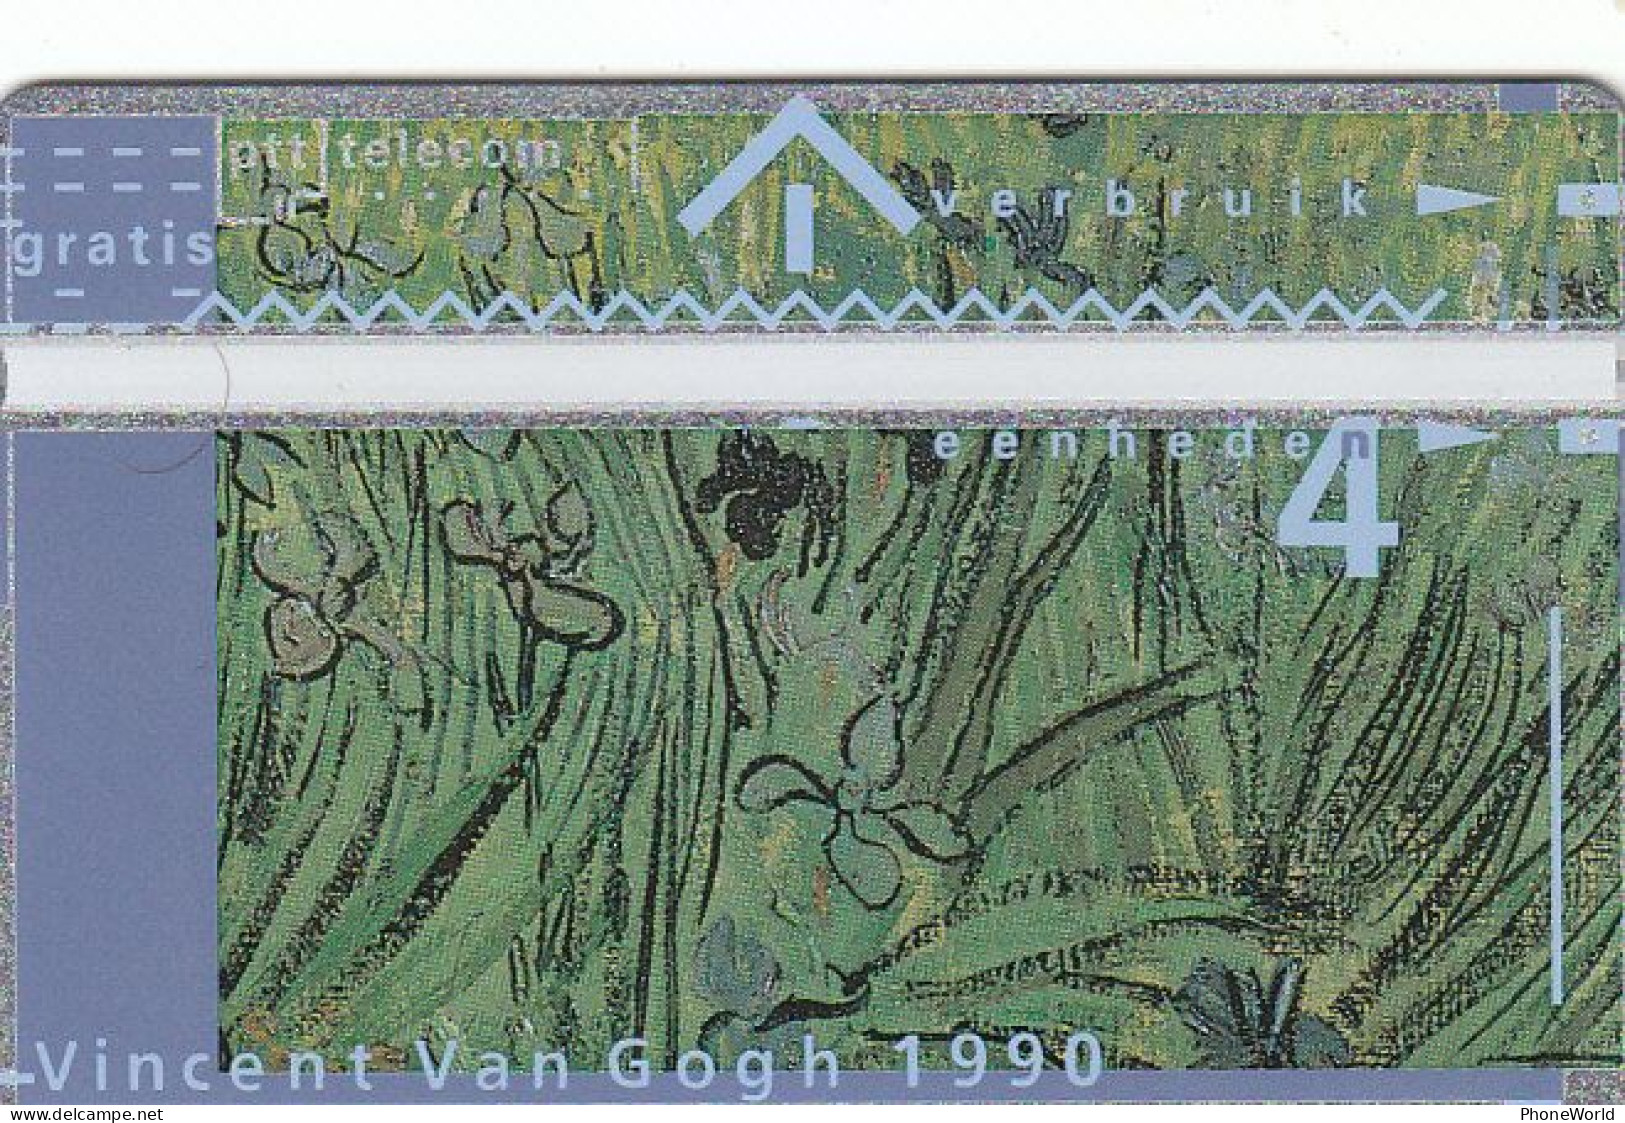 KPN, Paintings, Vincent Van Gogh 1990, #003A, Mint - Public